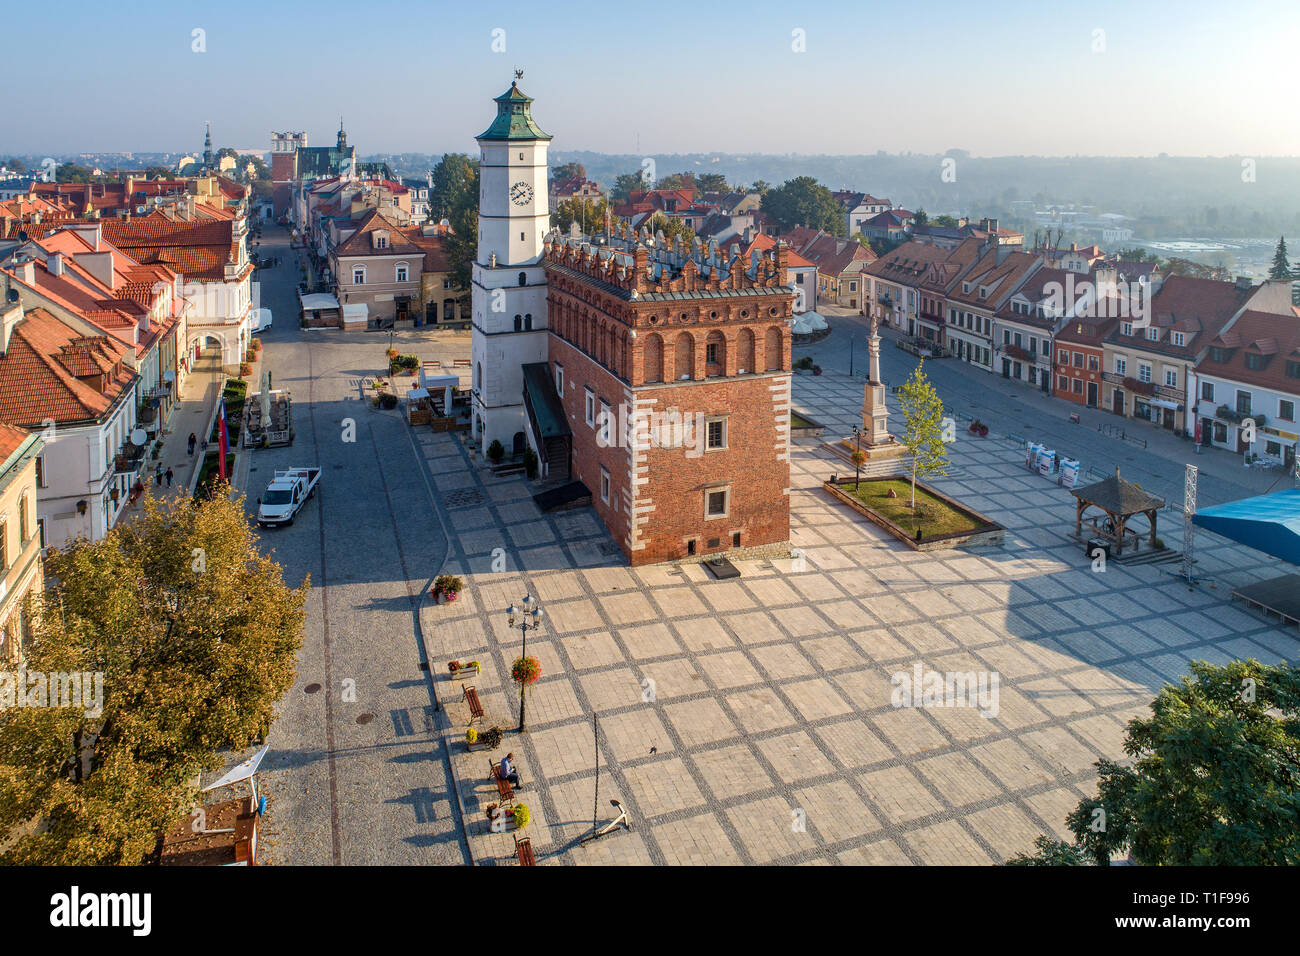 Sandomierz Altstadt, Polen. Luftaufnahme im Sonnenaufgang. Gotische Rathaus mit Glockenturm und Renaissance Dachgeschoss in der Marktplatz Stockfoto